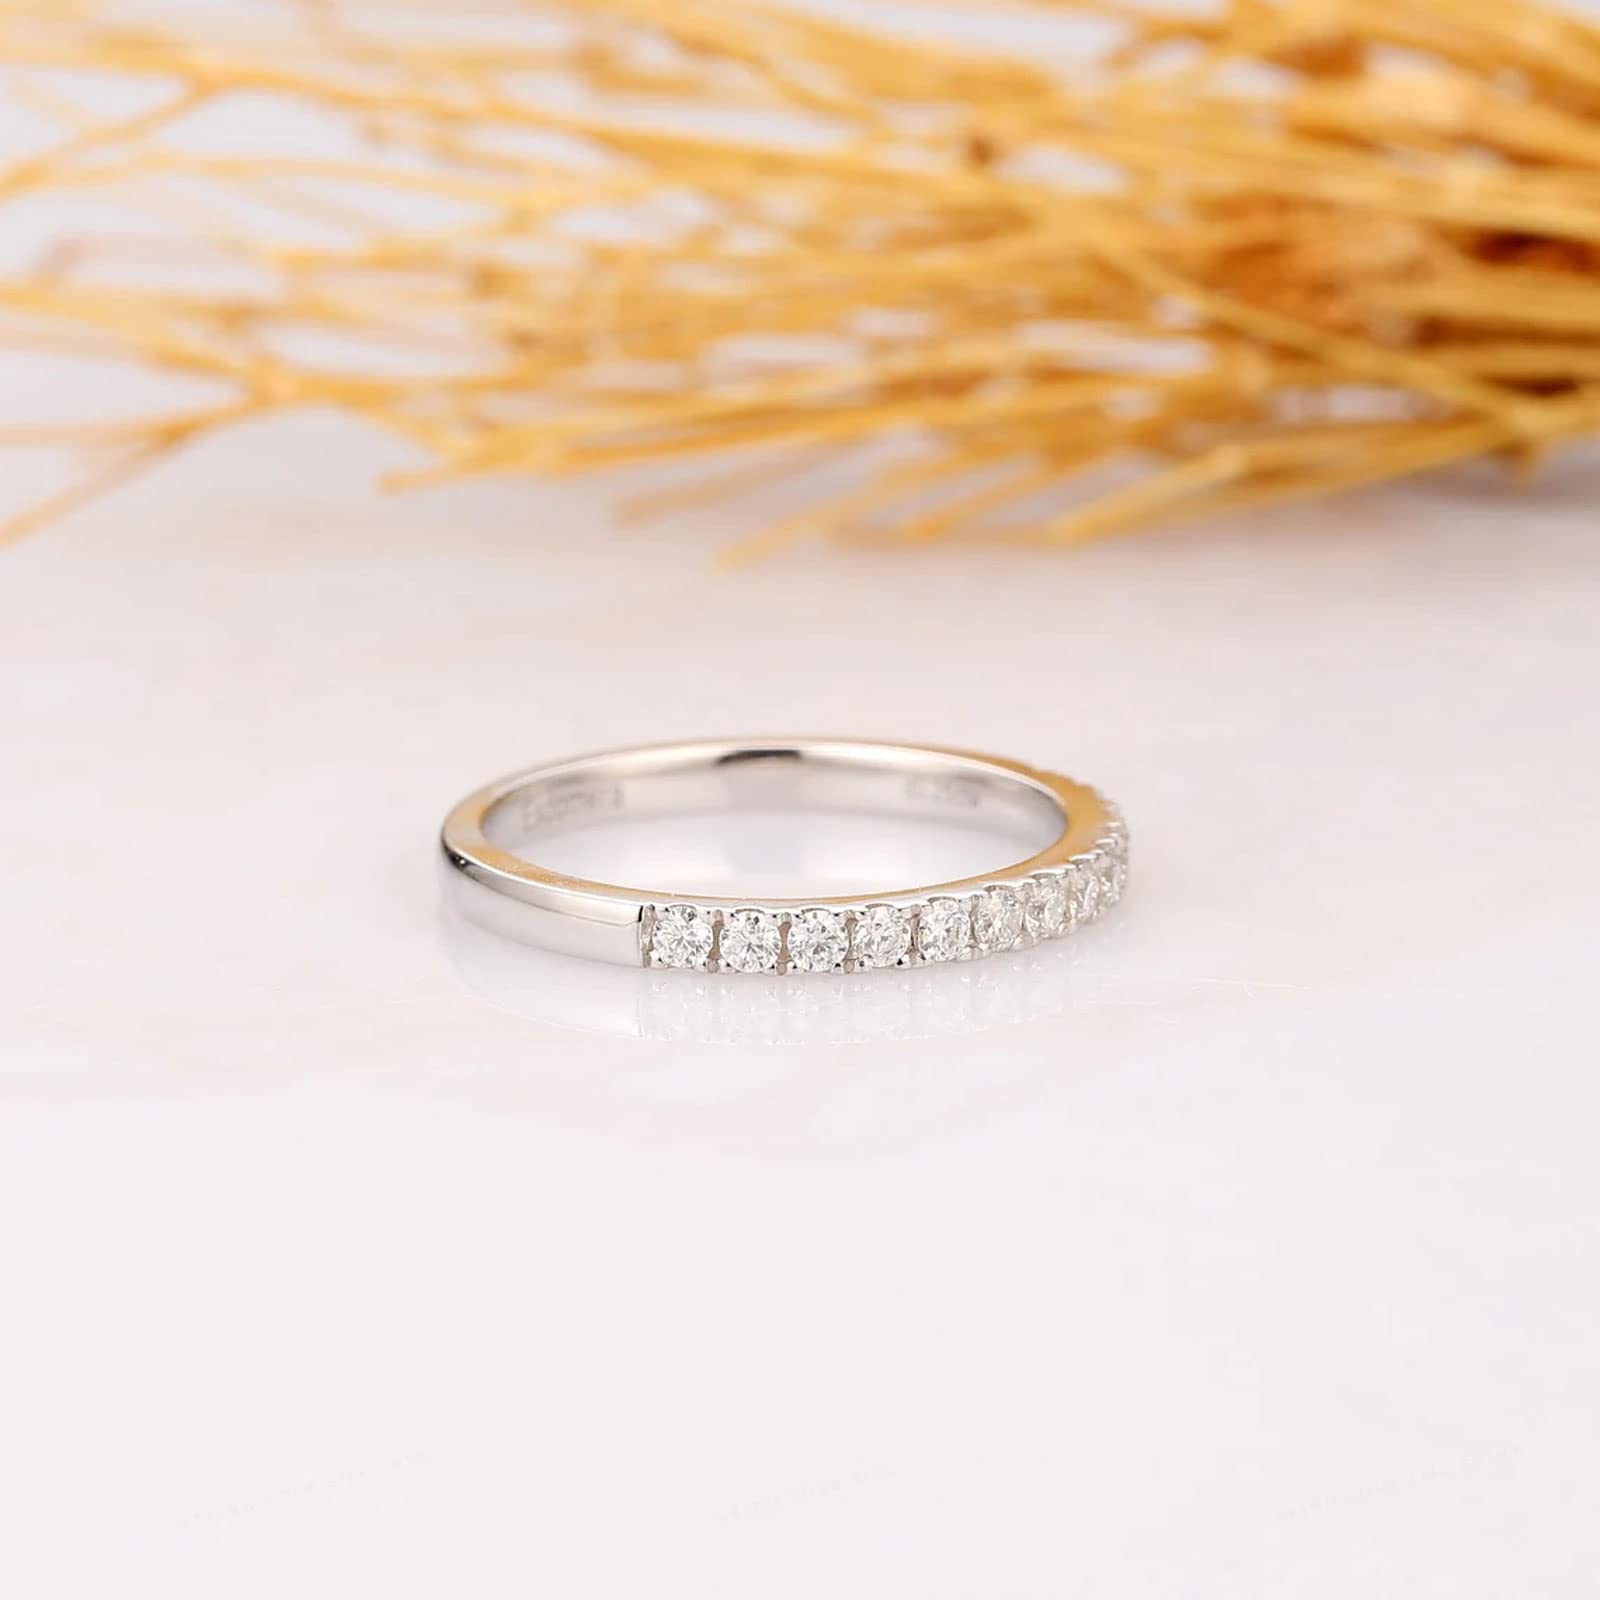 MRENITE 10K 14K 18K 2.5mm Moissanite Wedding Band for Women Round Moissanite Eternity Band D Color VVS1 Clarity Stackable Engagement Ring